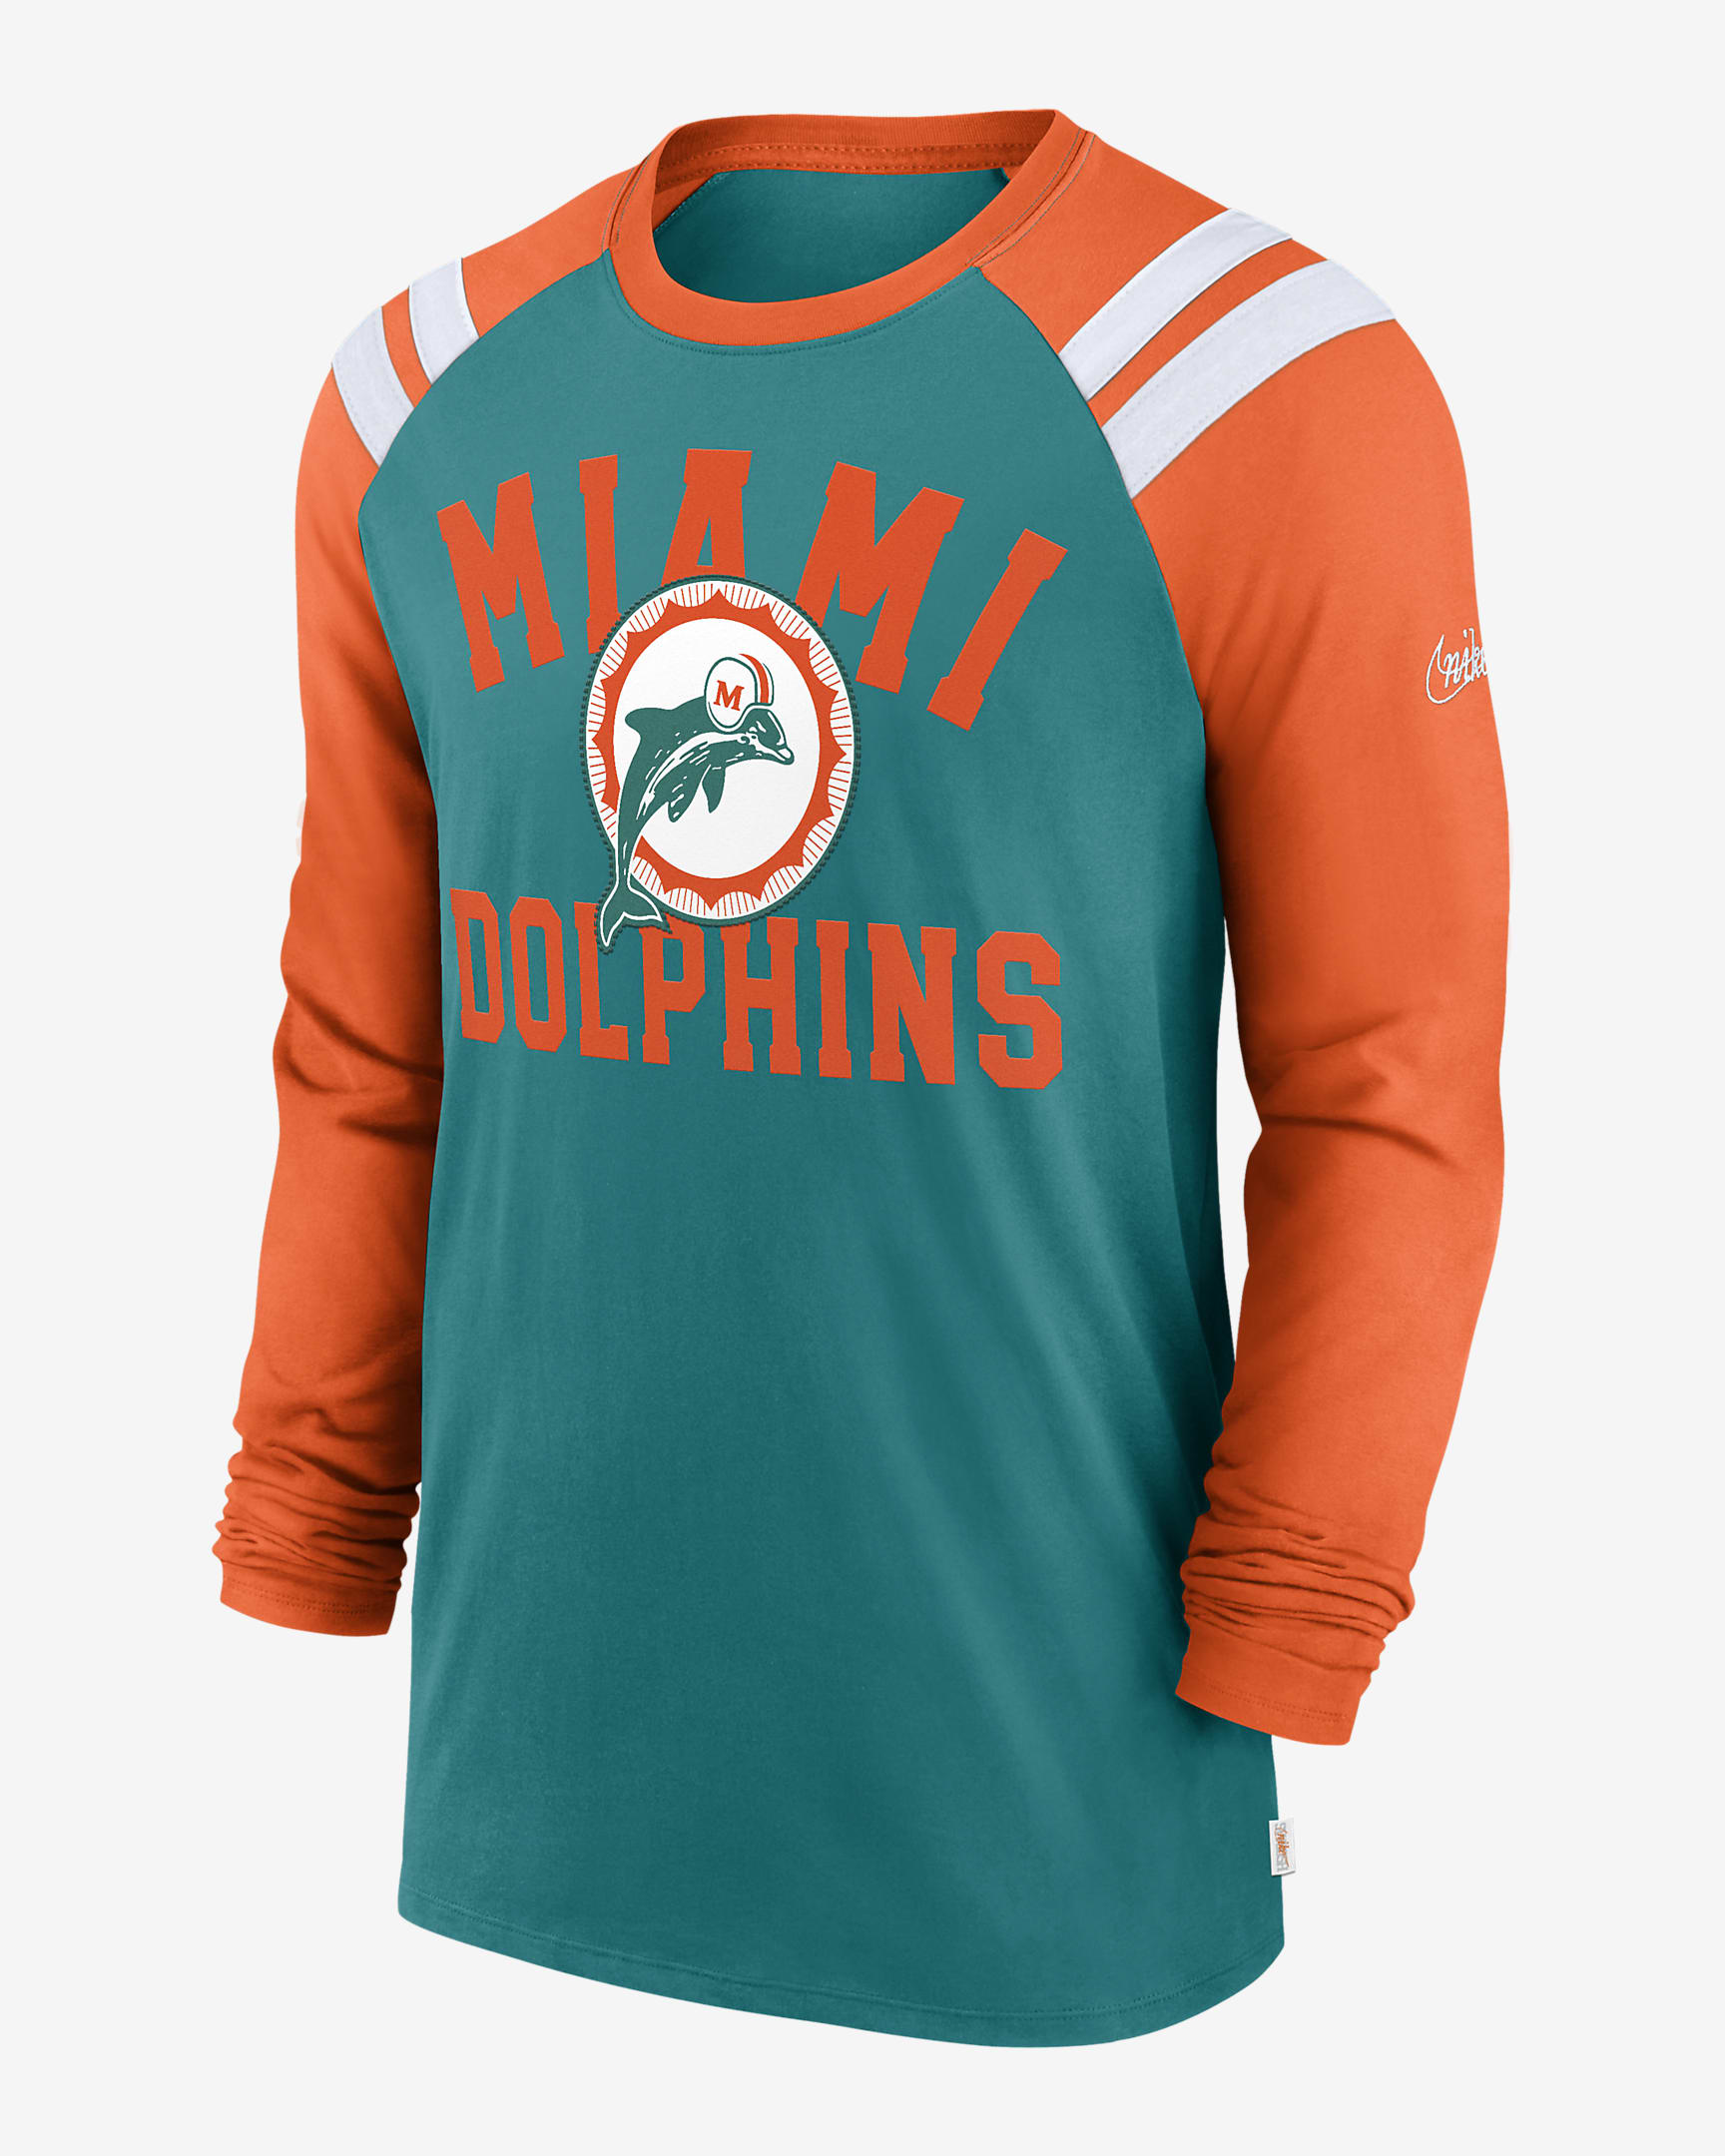 Playera de manga larga Nike de la NFL para hombre Miami Dolphins ...